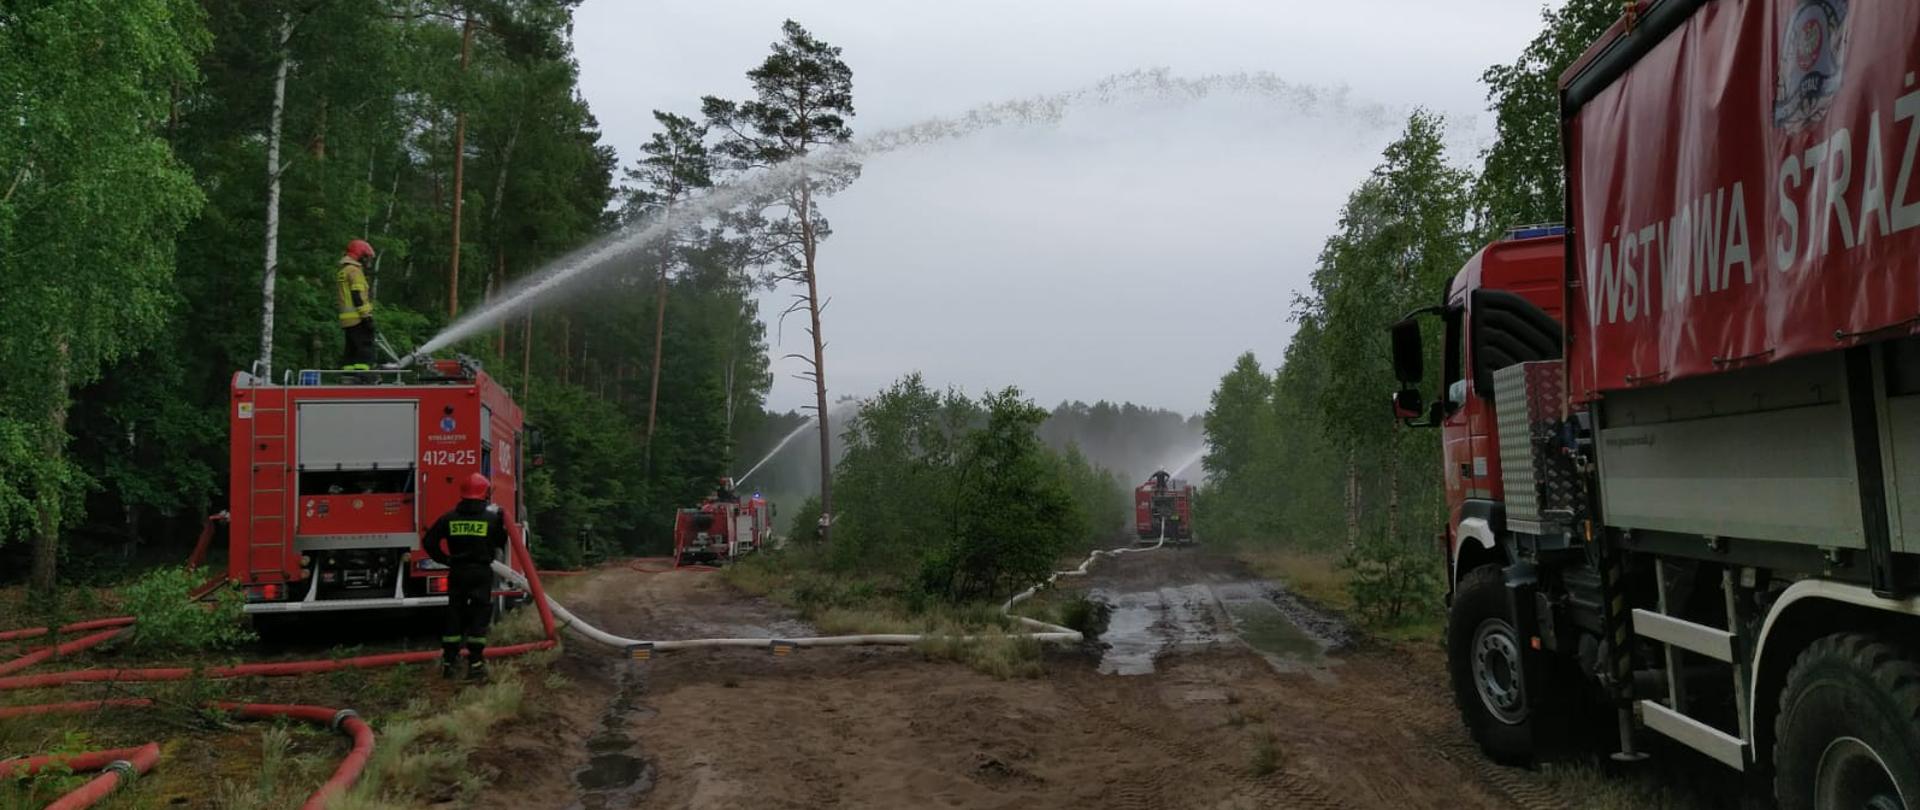 Gaszenie pożaru za pomocą działek wodnych znajdujących się na pojazdach pożarniczych 